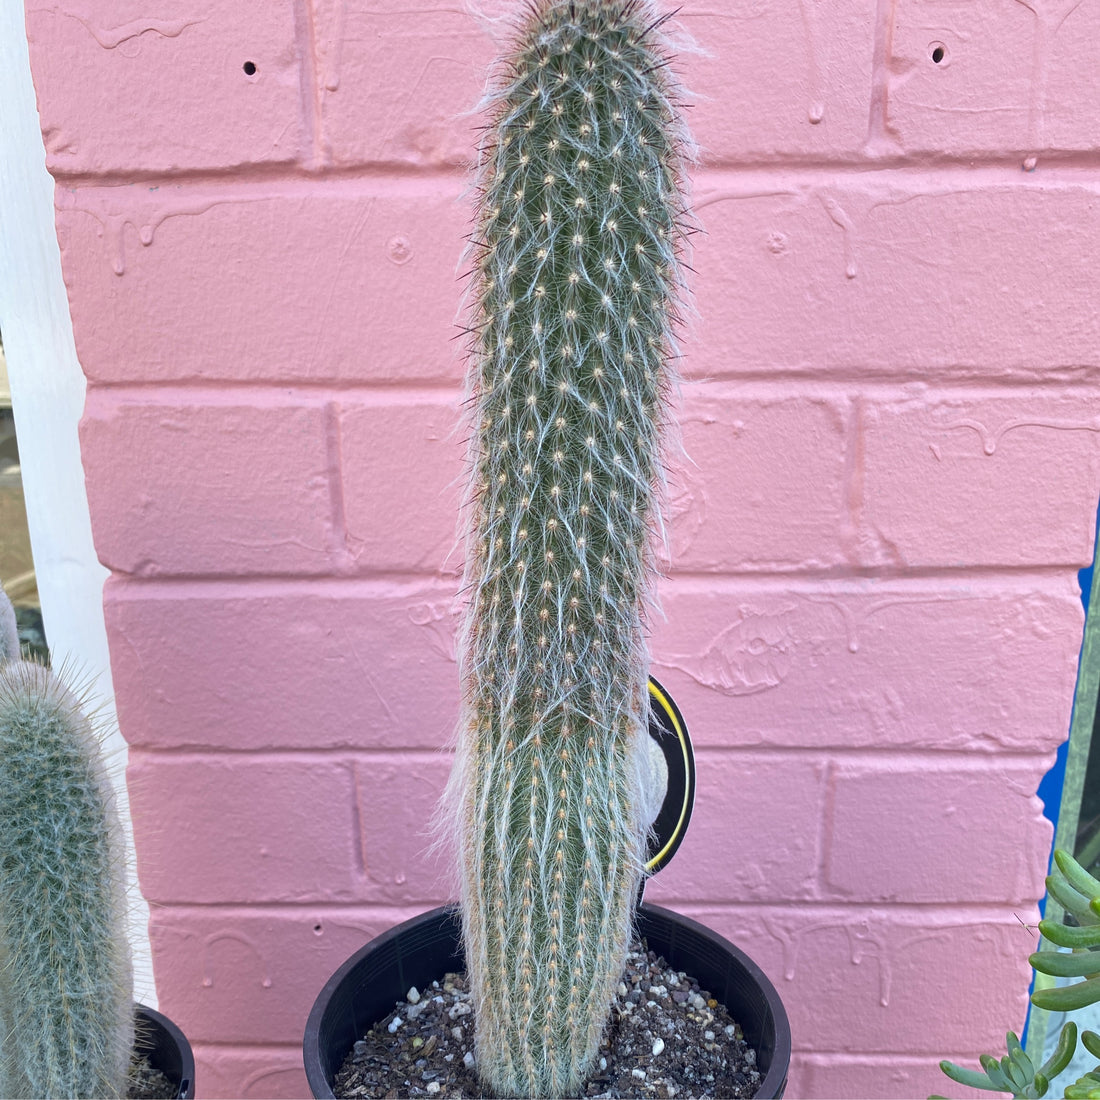 Espostoa spp. | Peruvian Old Man Cactus